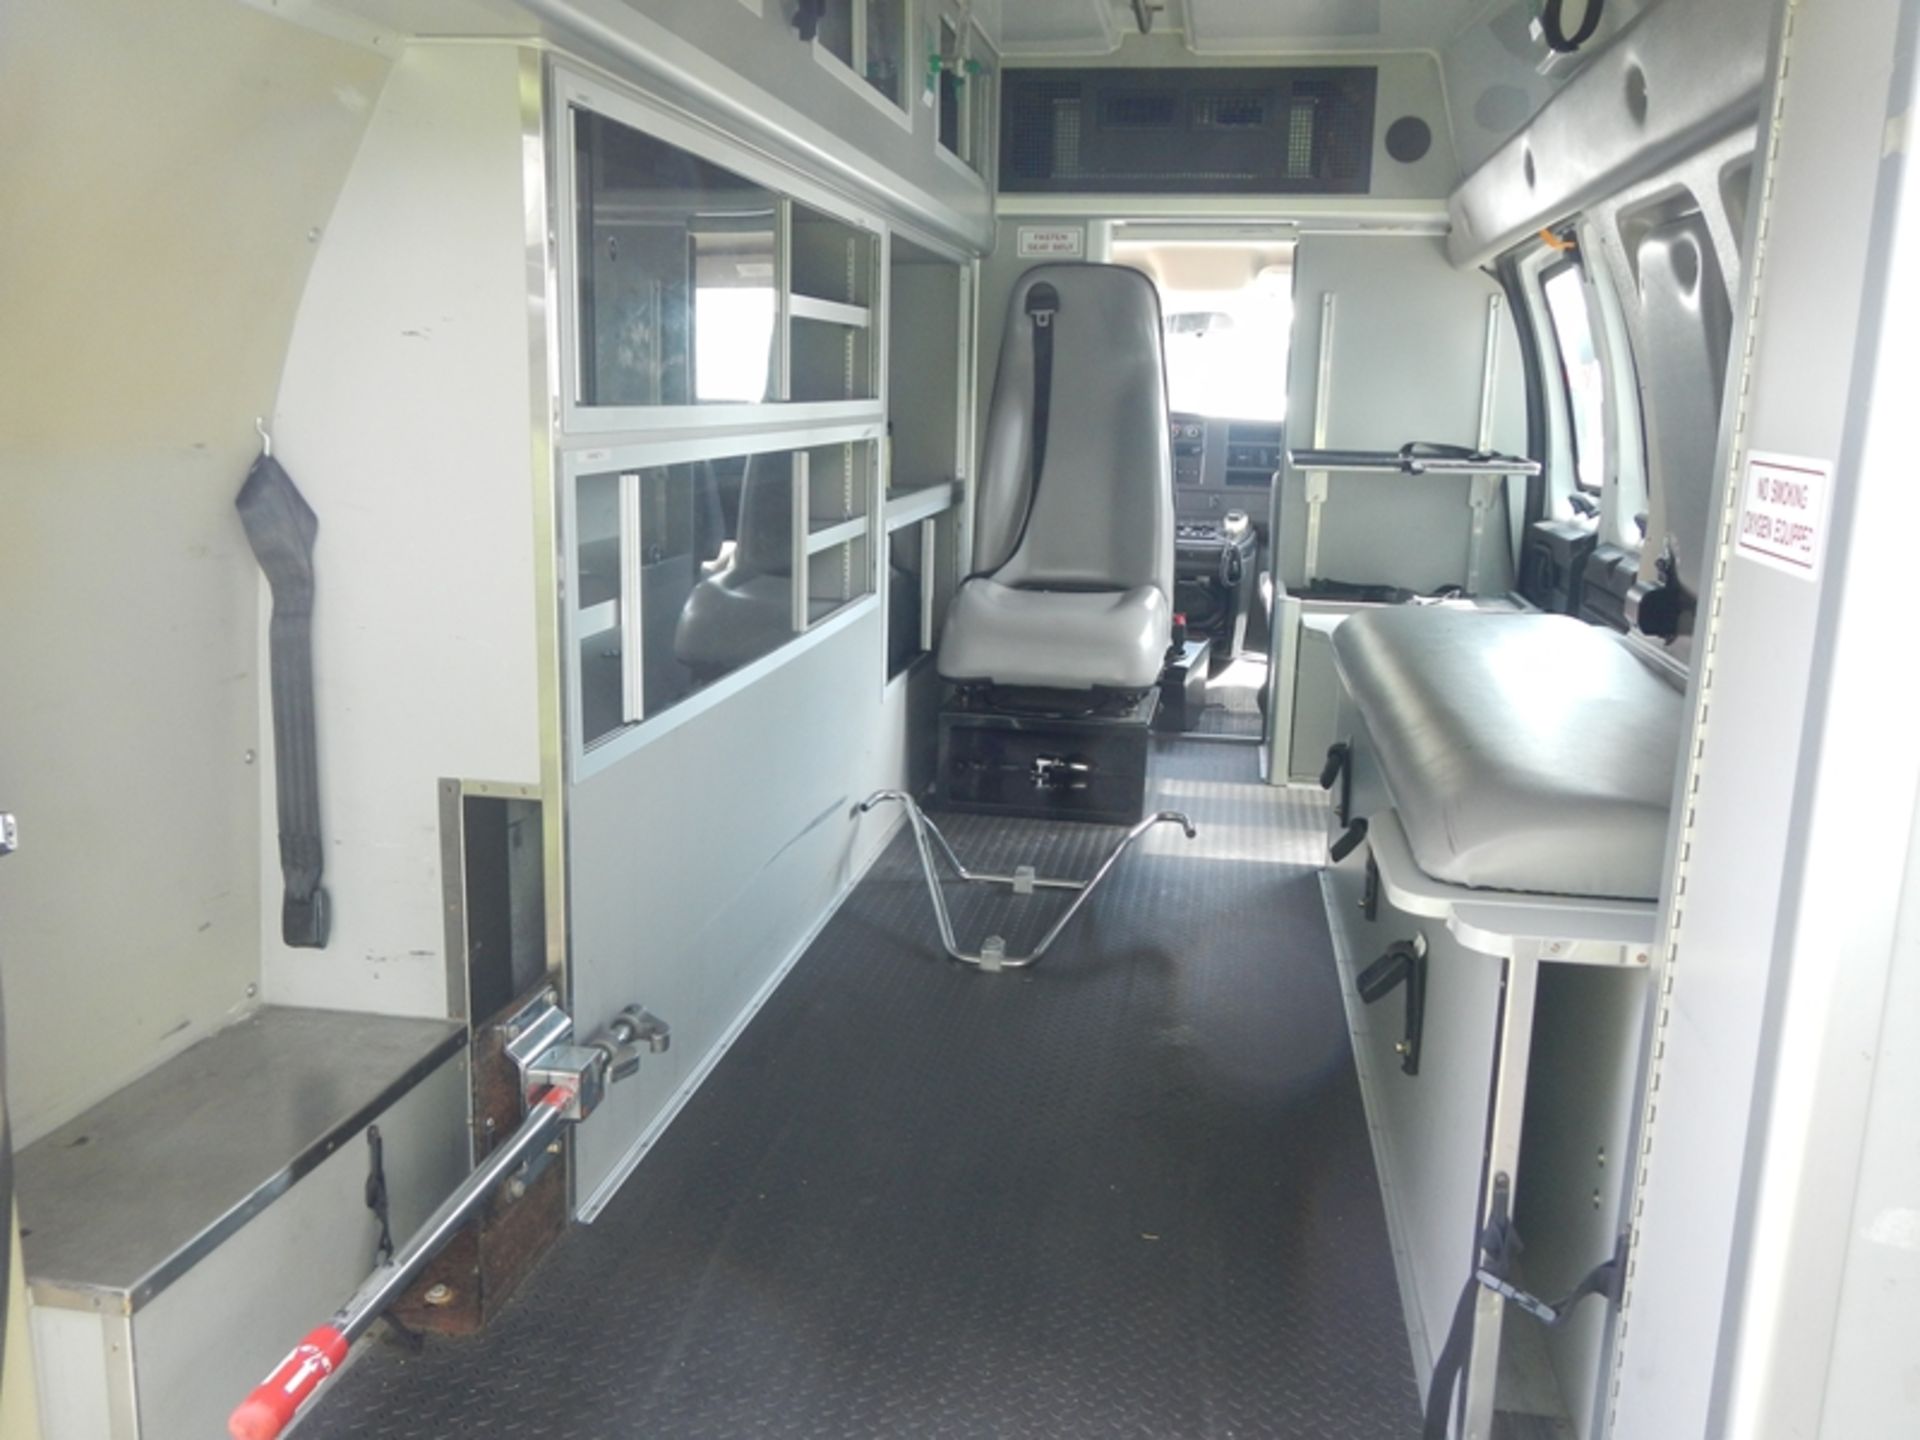 2009 CHEVROLET G-3500 Type II Ambulance 206,920 miles - 1GBHG396491168372 - Image 6 of 6